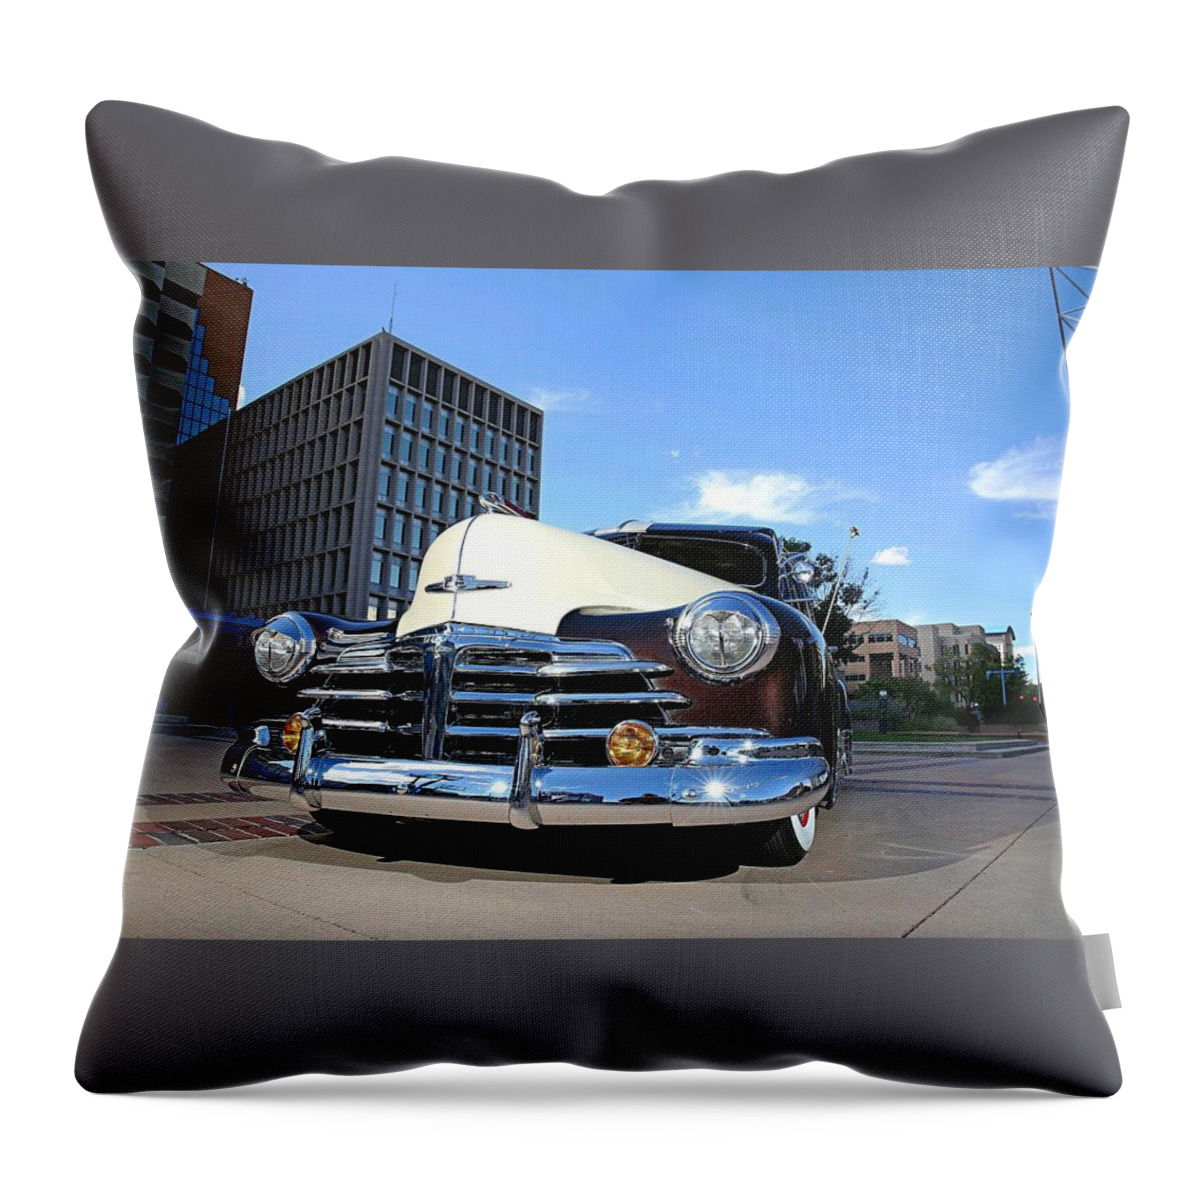 Chevrolet Fleetline Deluxe Throw Pillow featuring the photograph Chevrolet Fleetline Deluxe by Mariel Mcmeeking